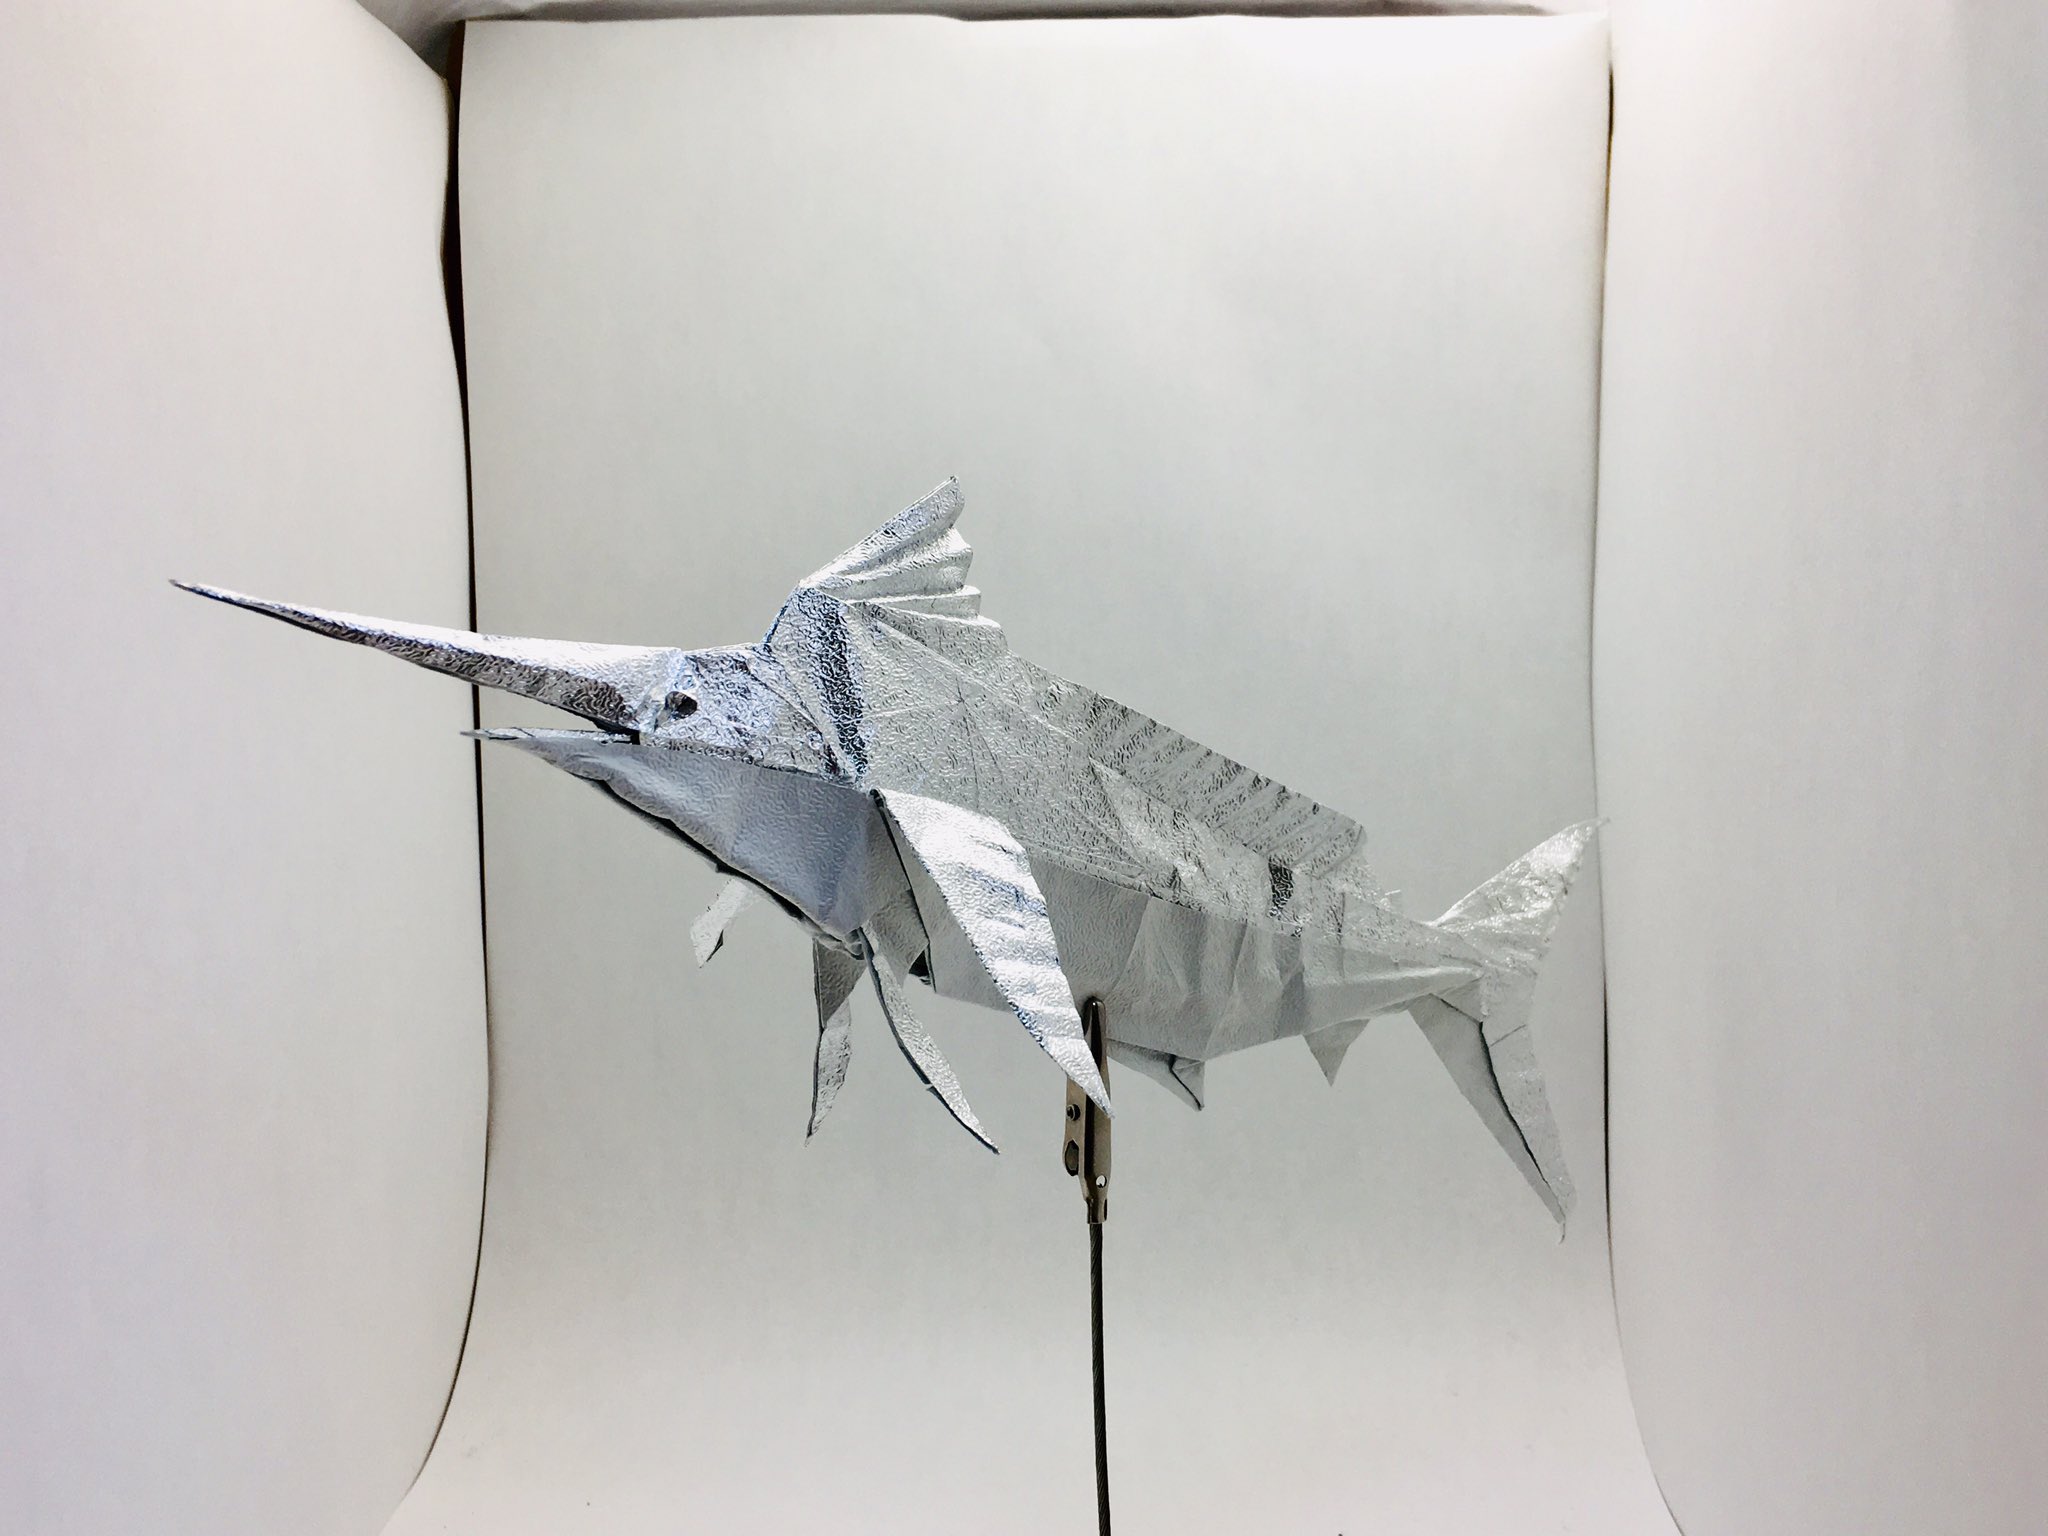 すぎぽよ No Twitter 柏村卓朗さんのマカジキ Marlin Designed By Takuro Kashiwamura 40cm民芸紙より One Sheet Of Square Paper 画像を調べると分かりますが ヒレの配置とかめっちゃリアルに作られてます バショウカジキも折って違いを観察するのも面白